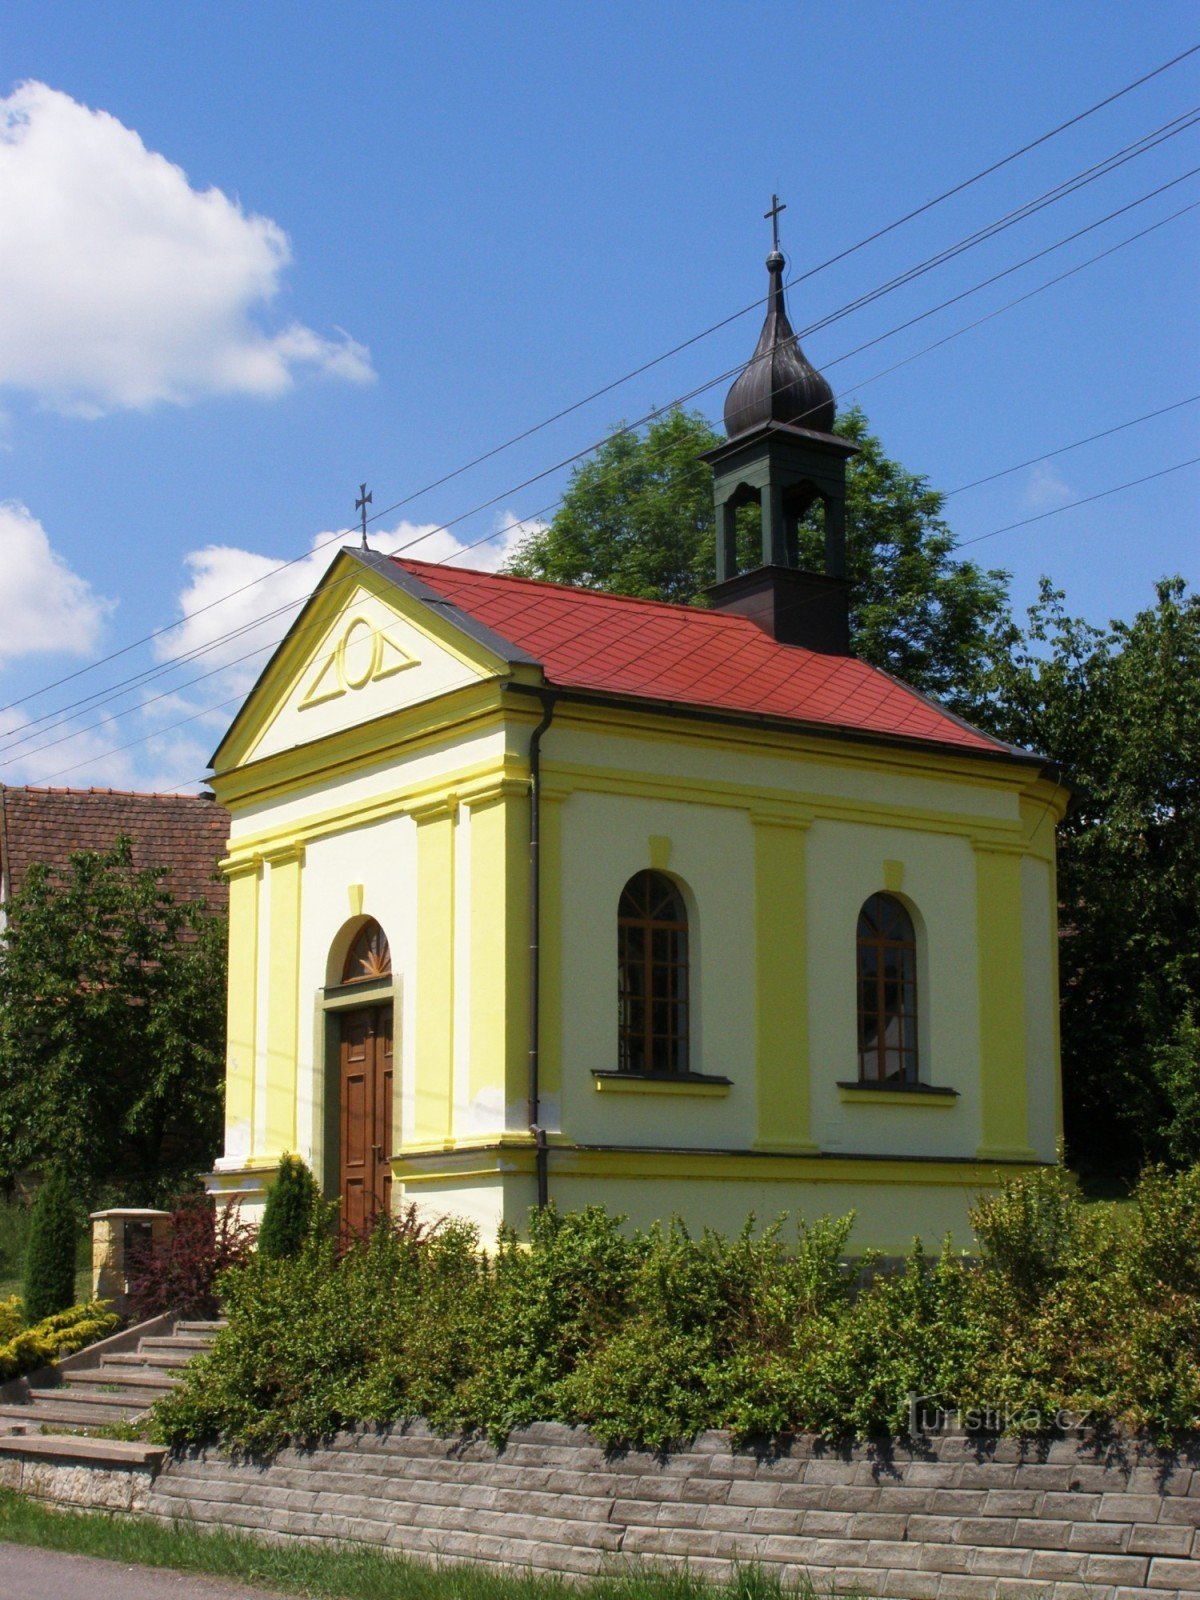 Slemeno - kapellet St. Josef